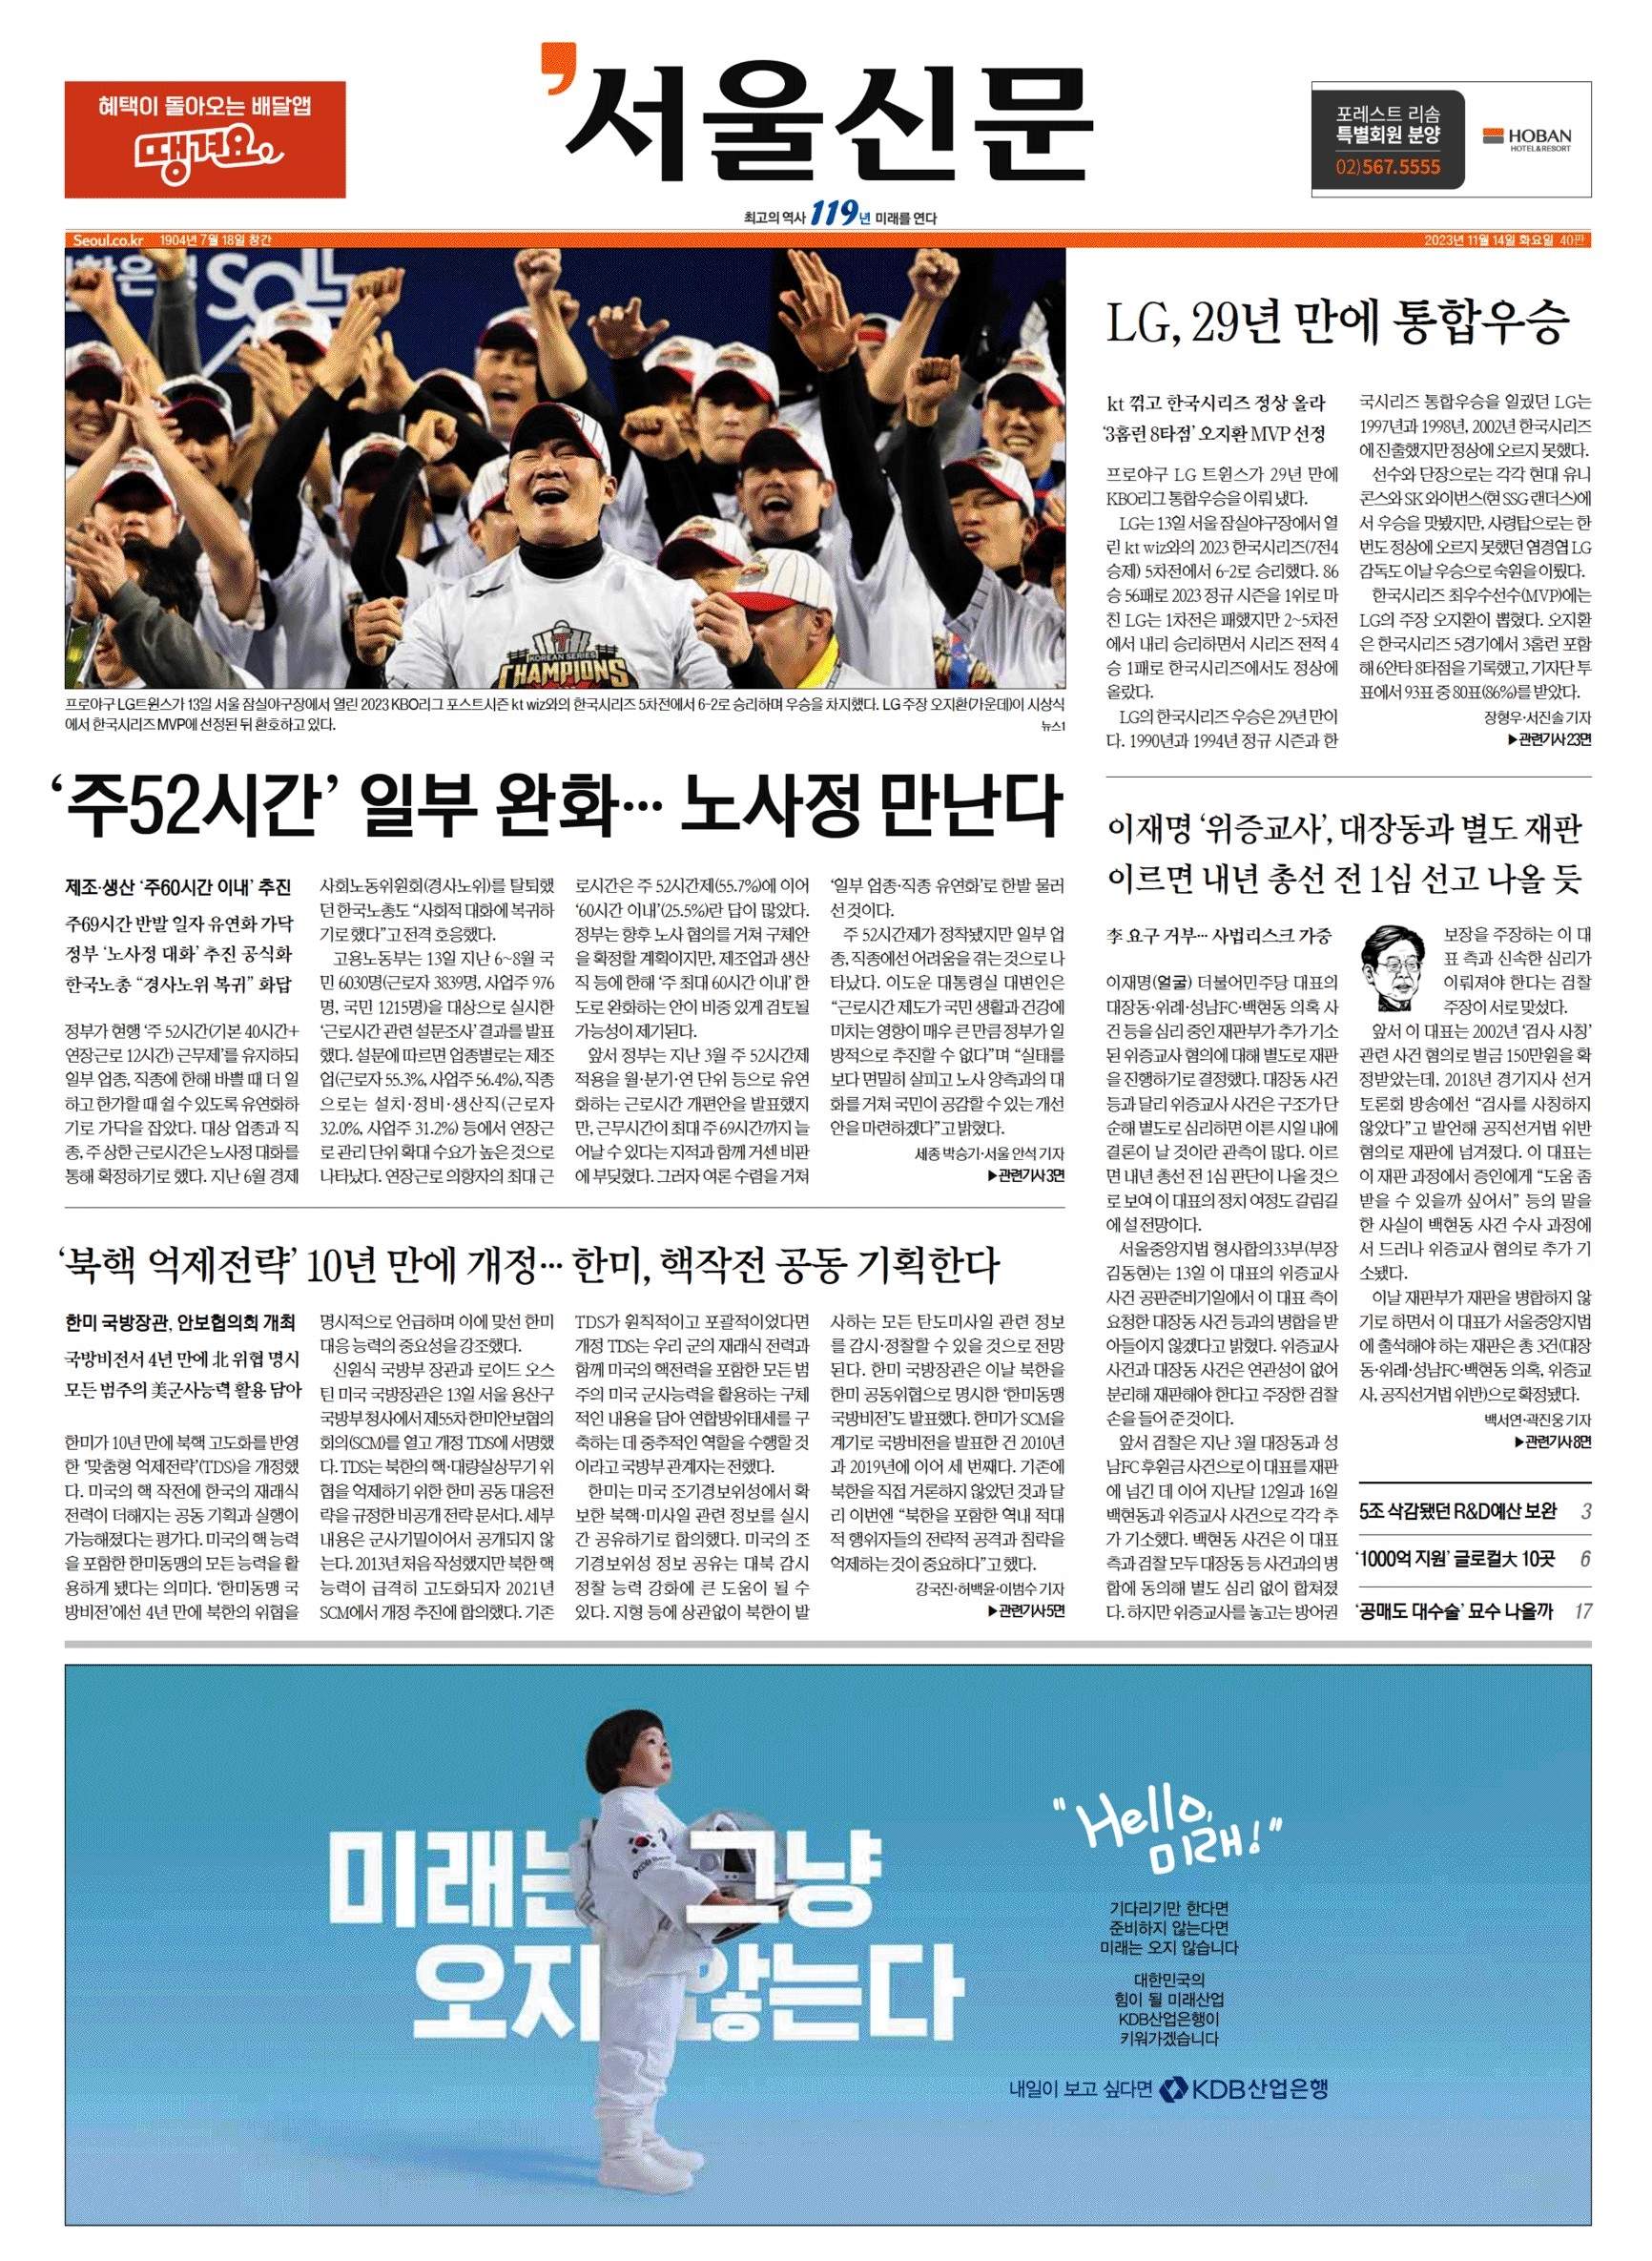 14일자 서울신문 1면. 스포츠지를 제외하고 1면에 LG의 우승사진과 우승기사까지 실은 매체는 서울신문이 유일했다.